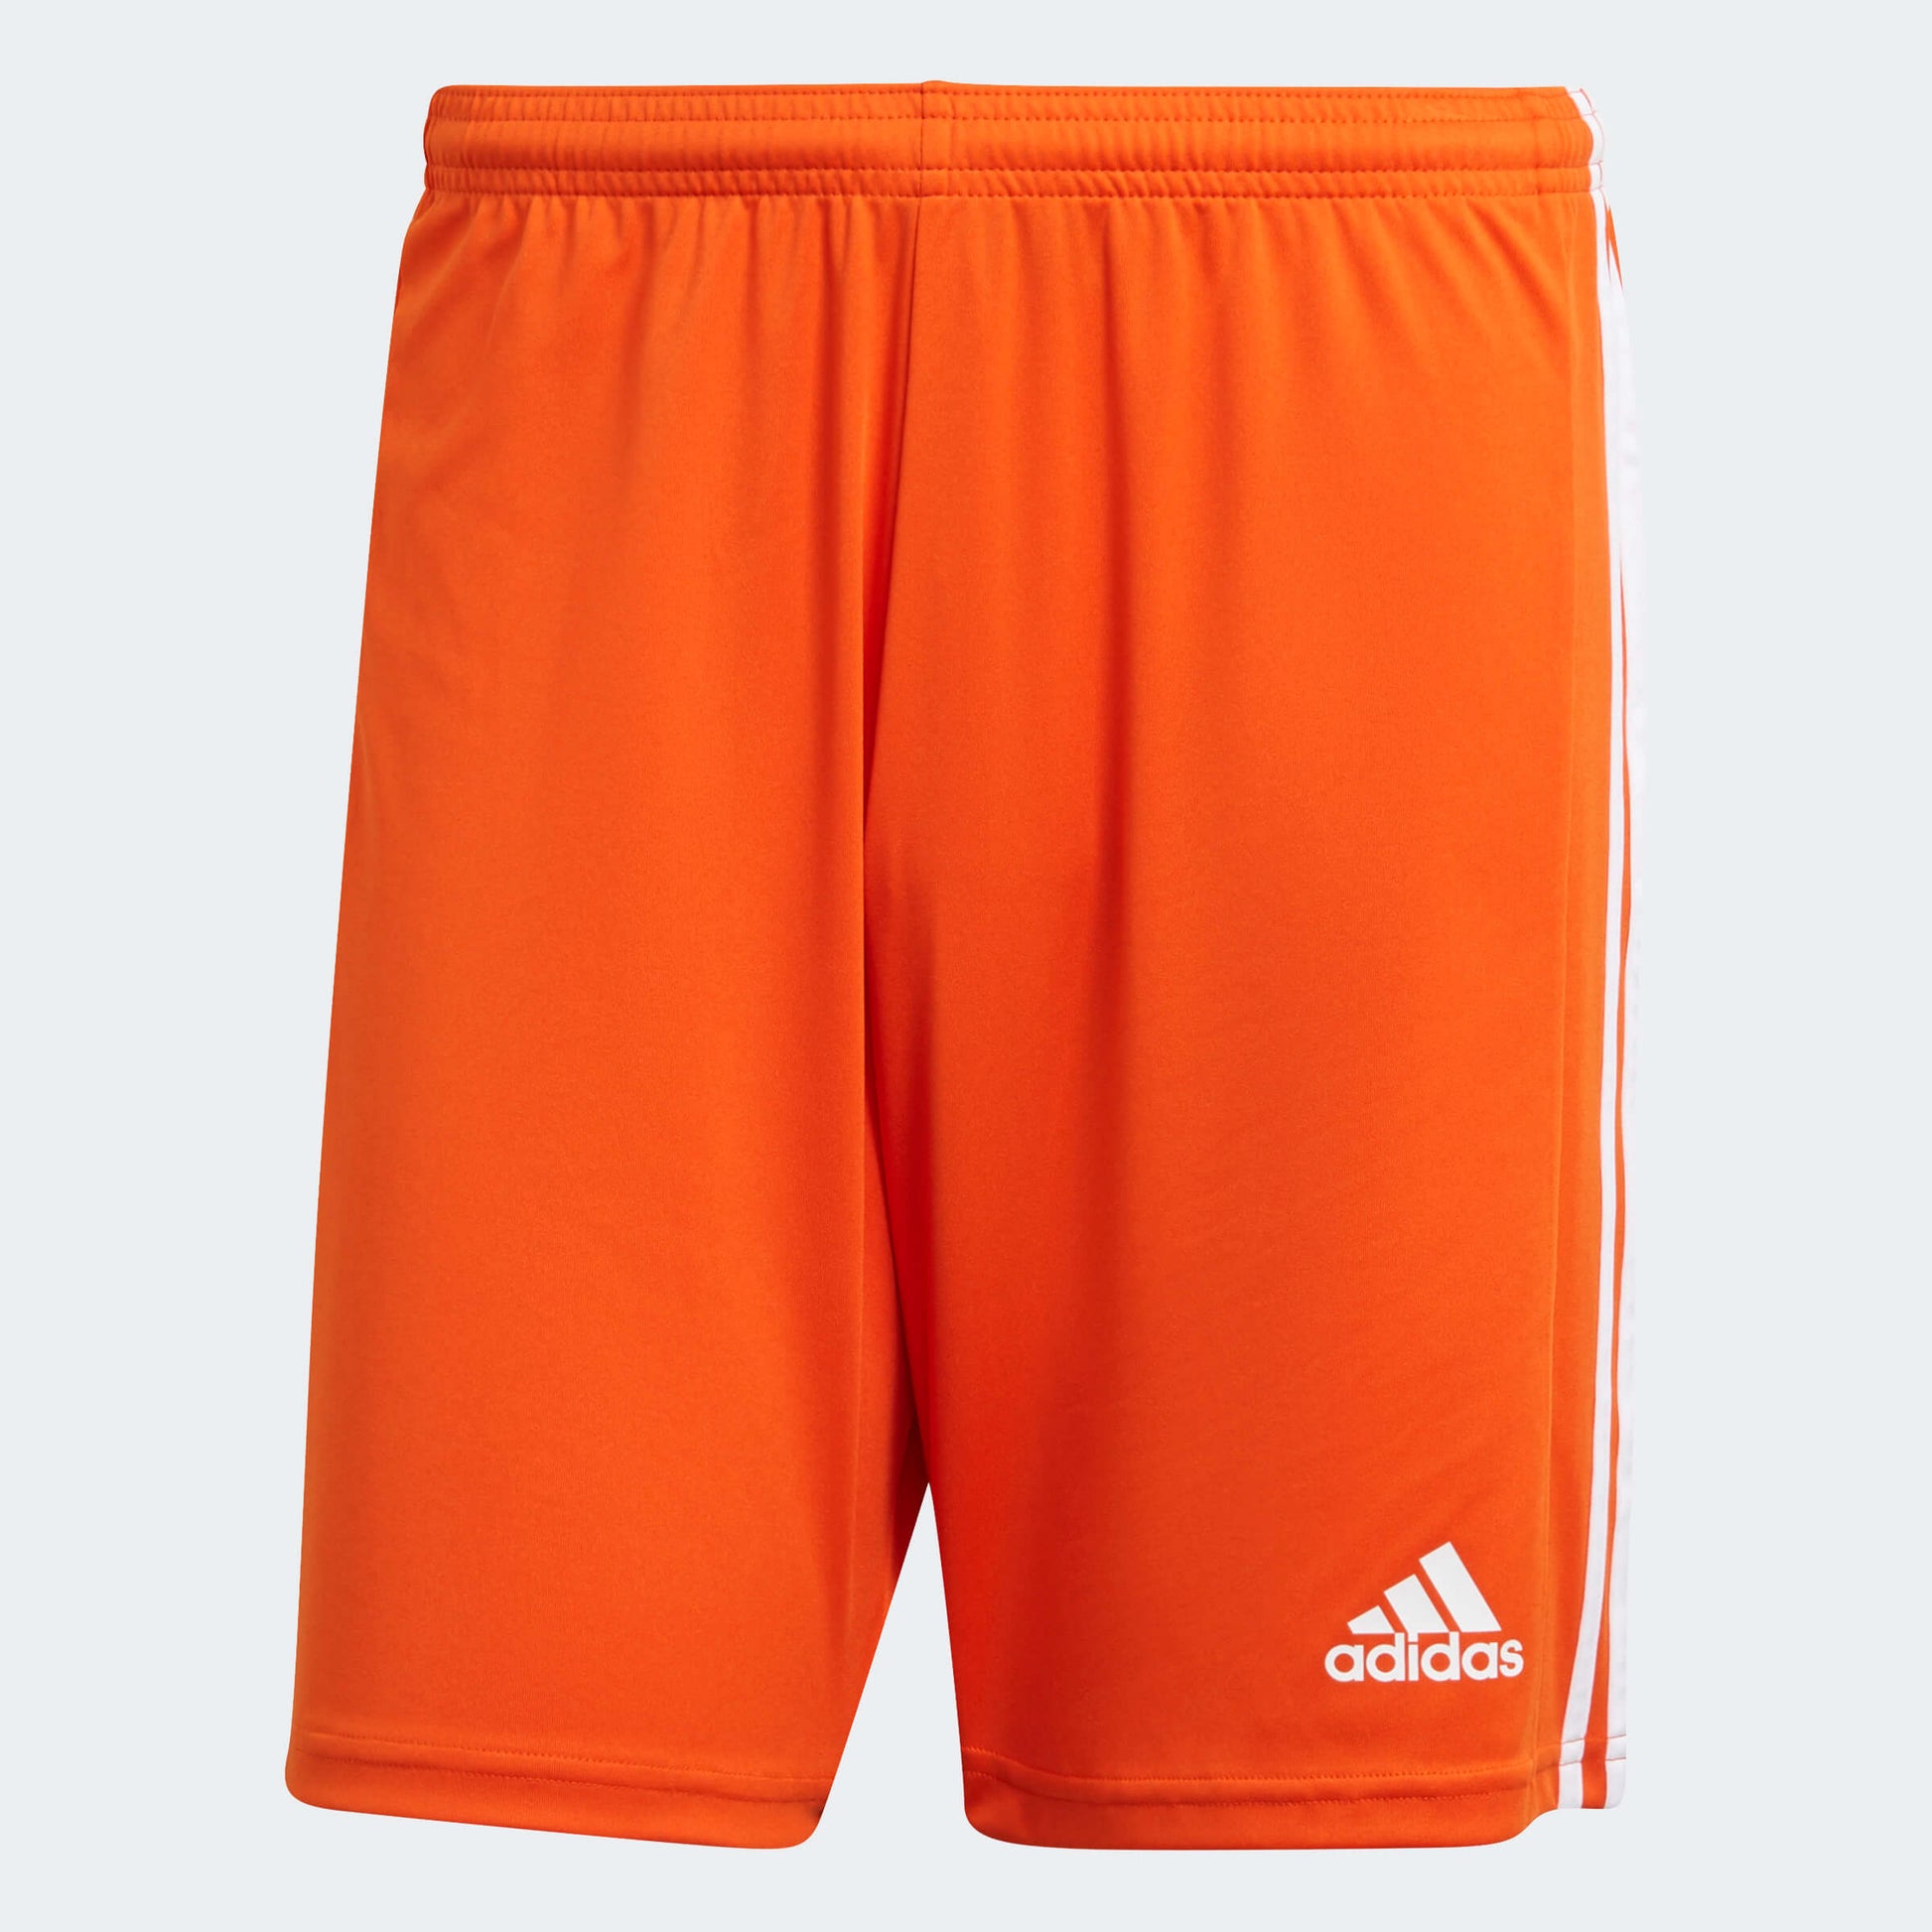  adidas Squadra 21 Shorts Orange-White (Front)